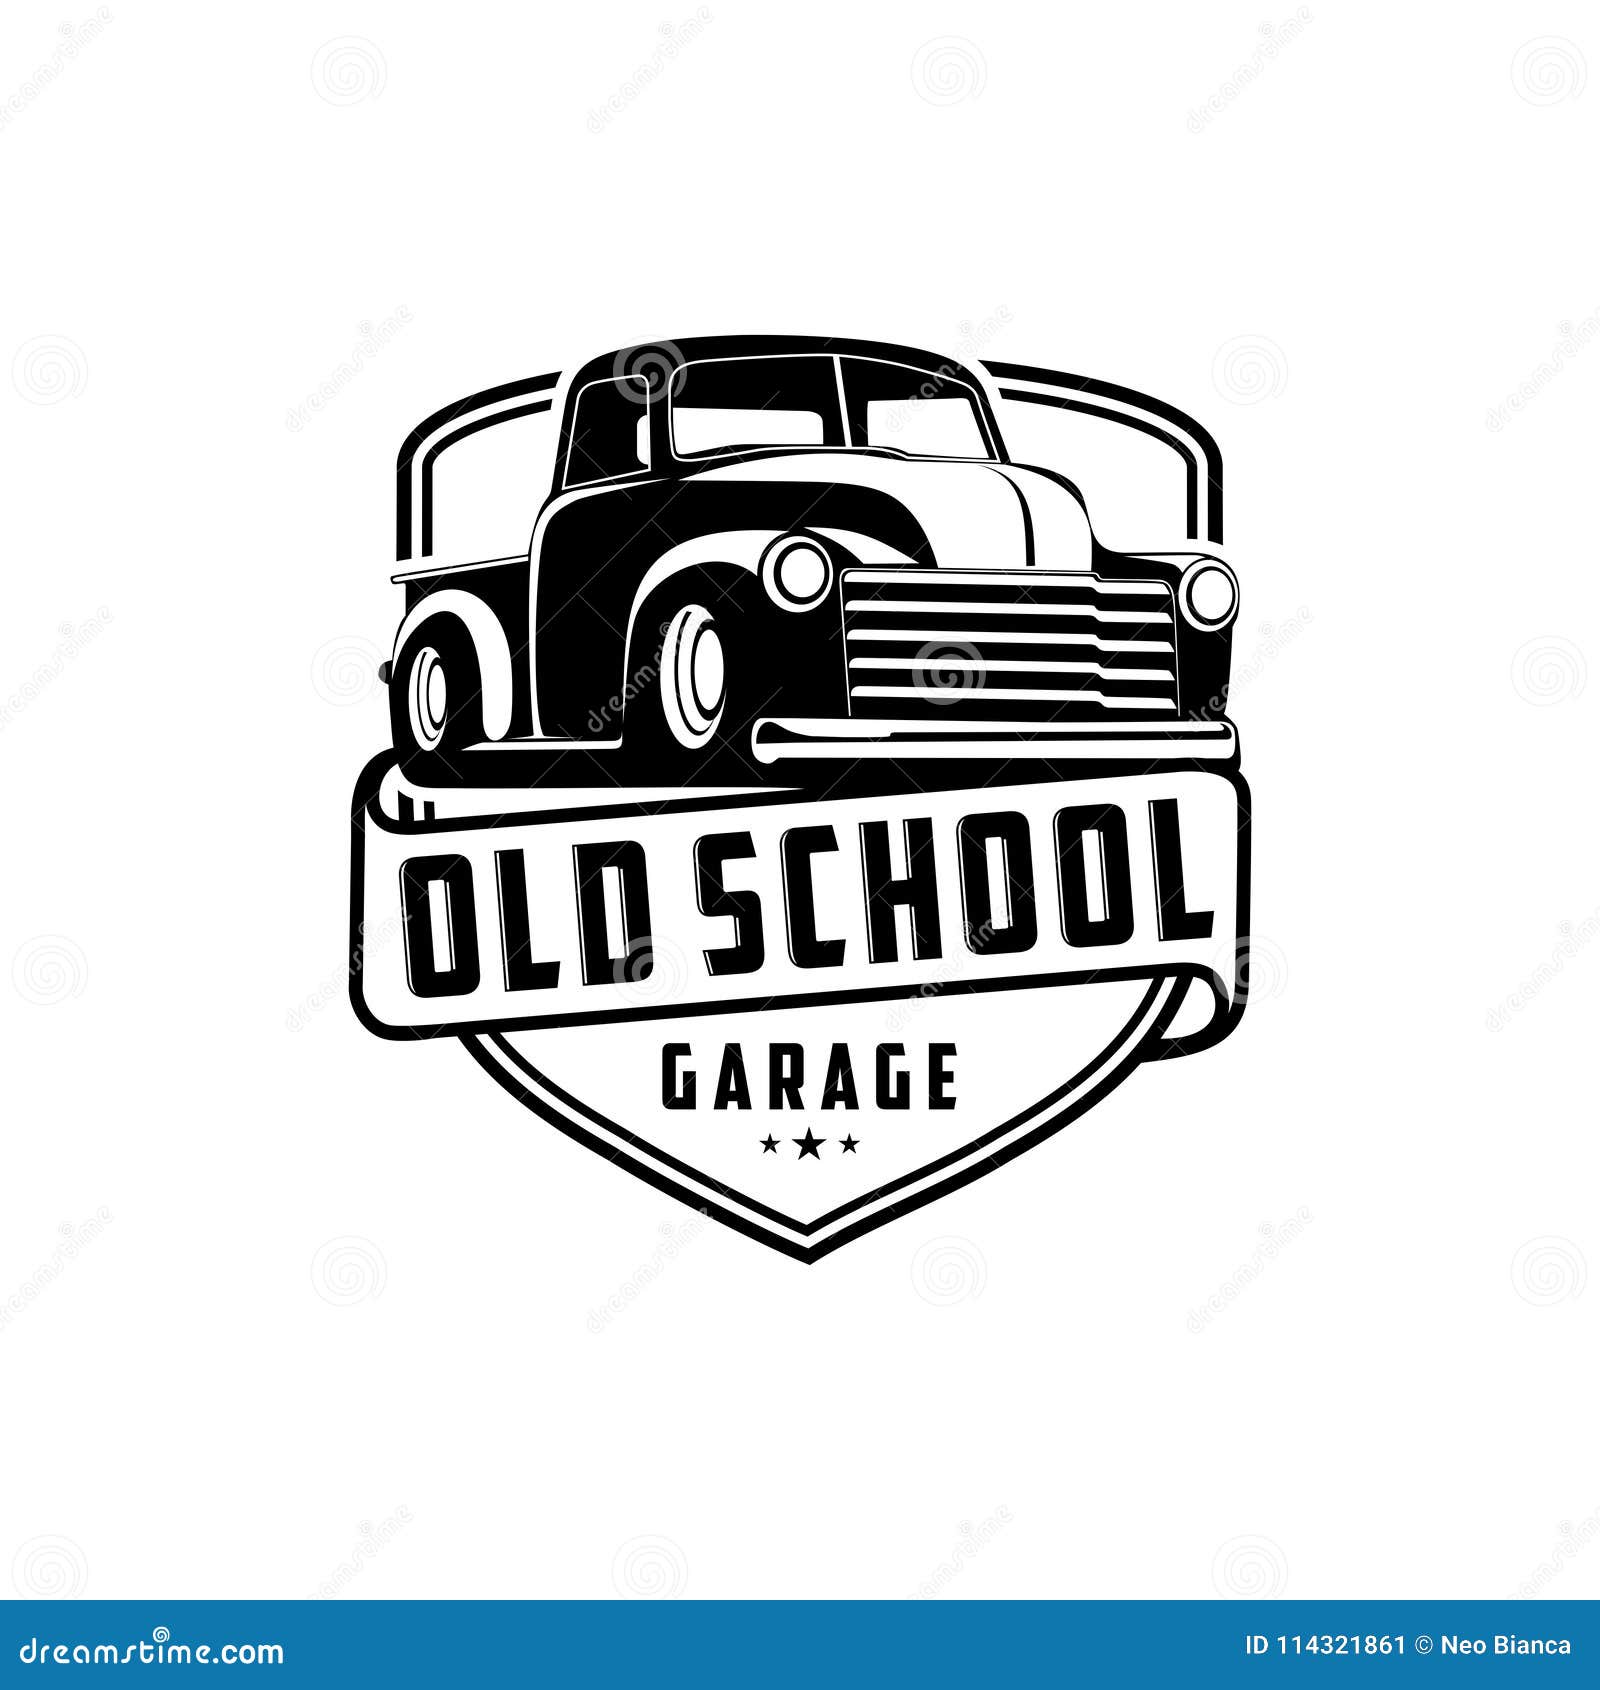 old school garage truck logo 